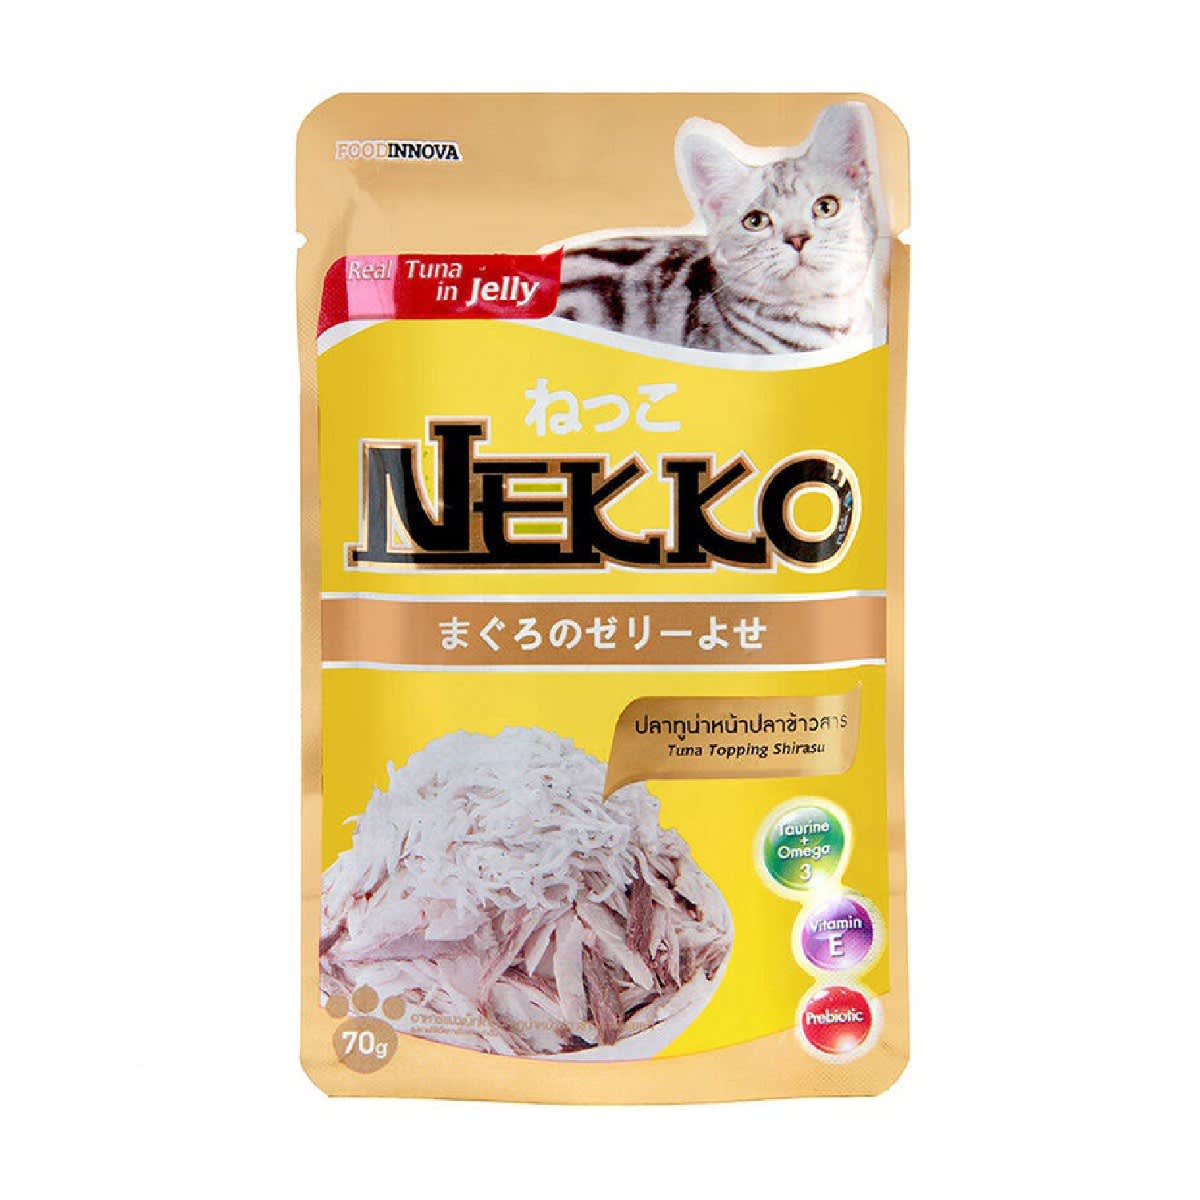 Nekko เน็กโกะ รสปลาทูน่าหน้าปลาข้าวสารในเยลลี่ สำหรับแมว 70 g